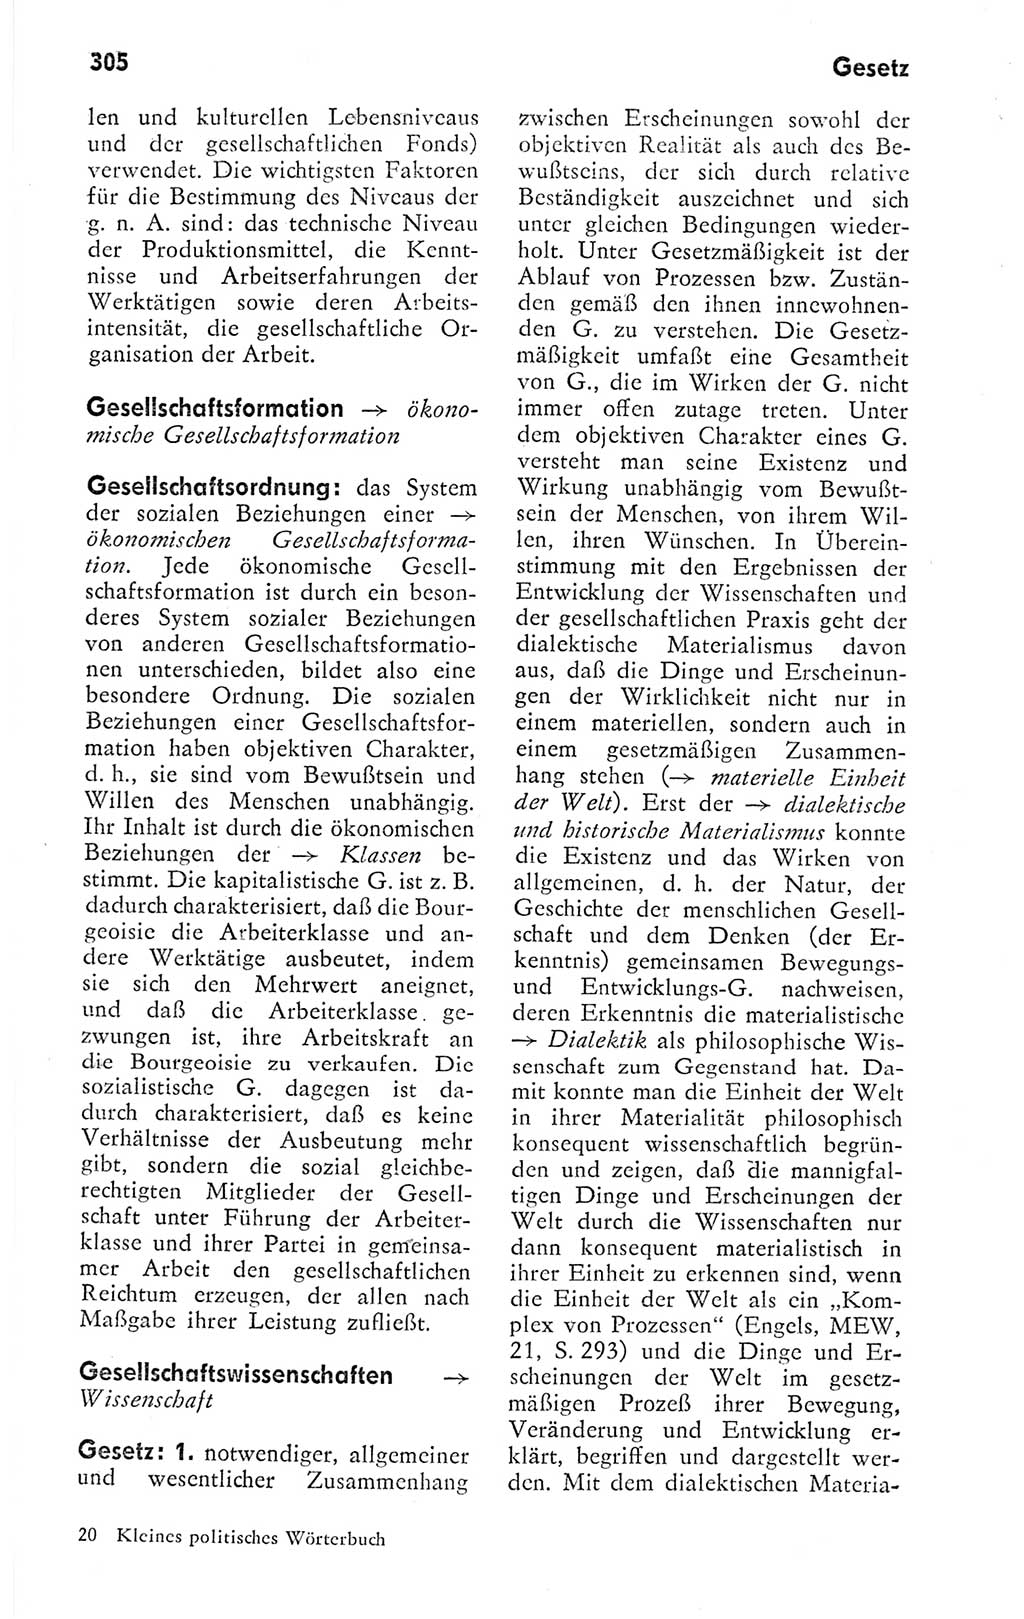 Kleines politisches Wörterbuch [Deutsche Demokratische Republik (DDR)] 1978, Seite 305 (Kl. pol. Wb. DDR 1978, S. 305)